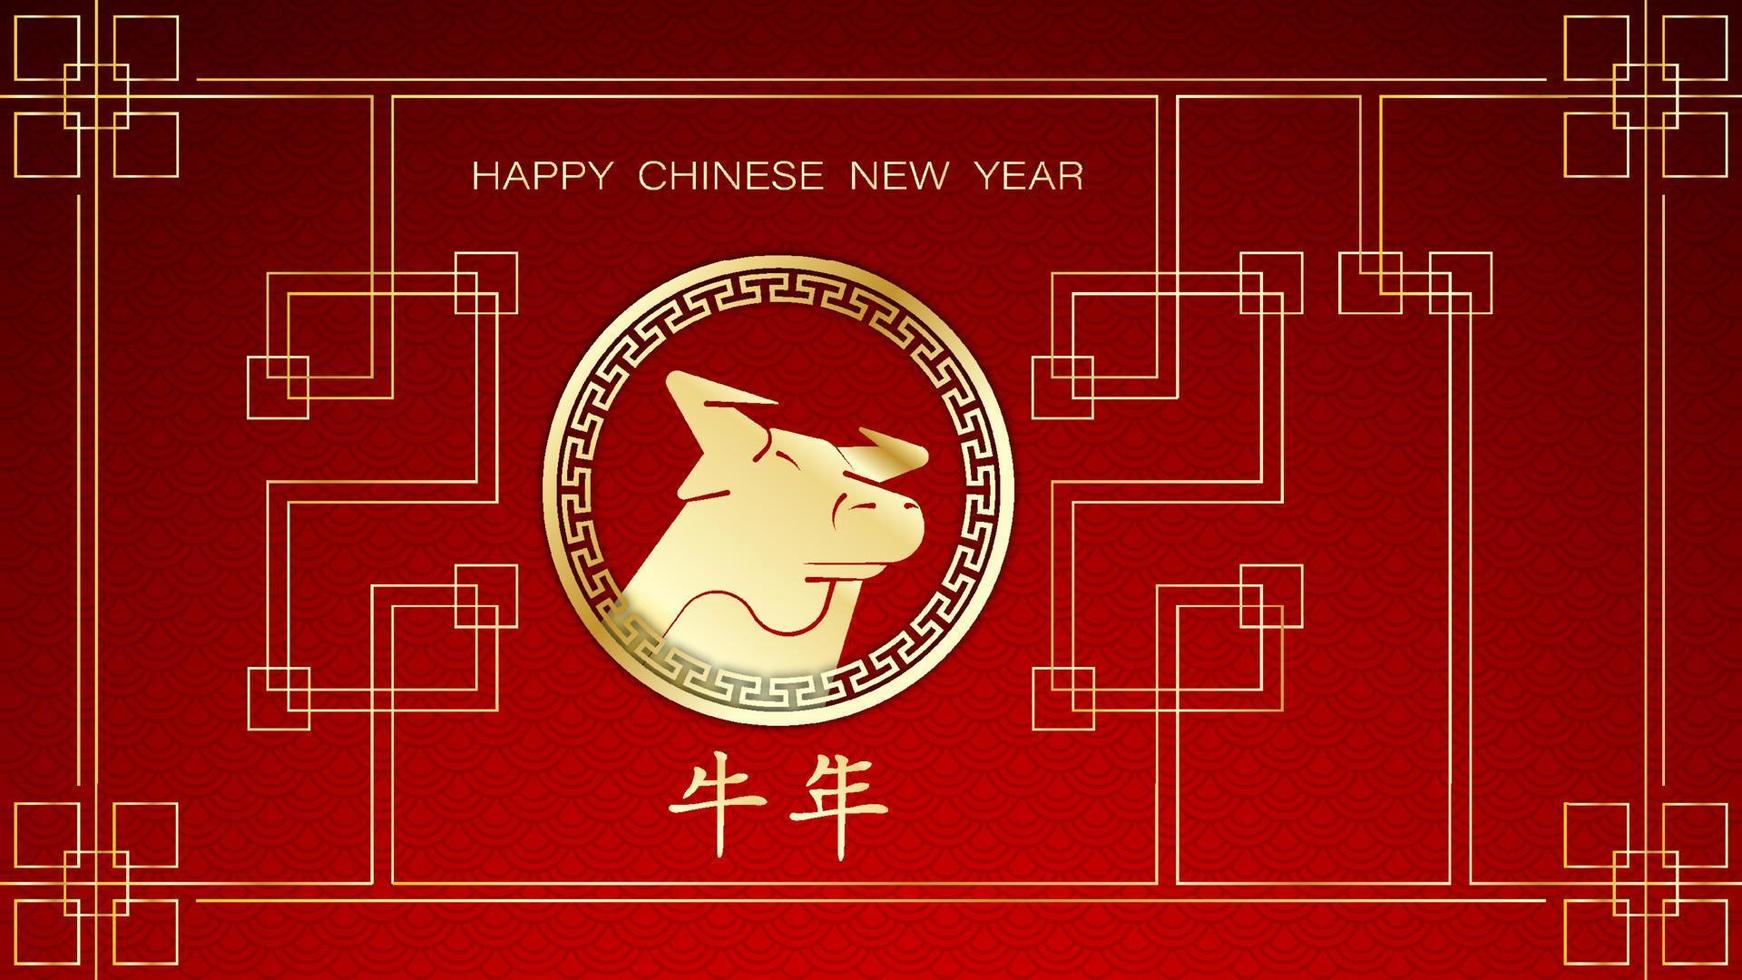 2021 ano novo chinês das cores boi, vermelho e dourado com ornamentos decorativos tradicionais em segundo plano. tradução chinesa ano de boi vetor